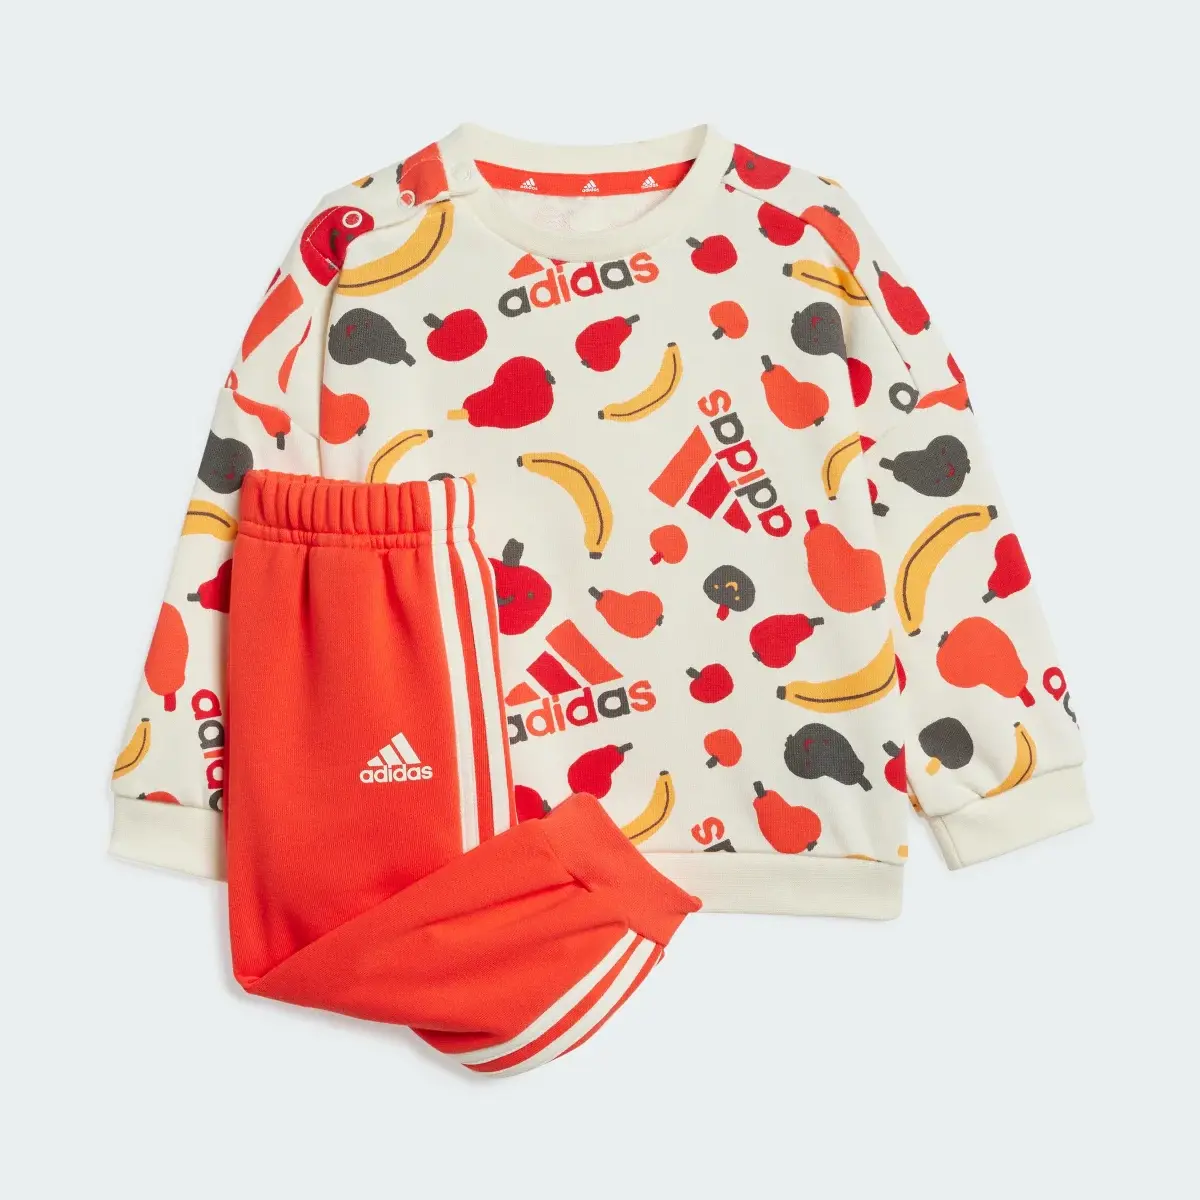 Adidas Tuta Essentials Allover Print Infant. 2